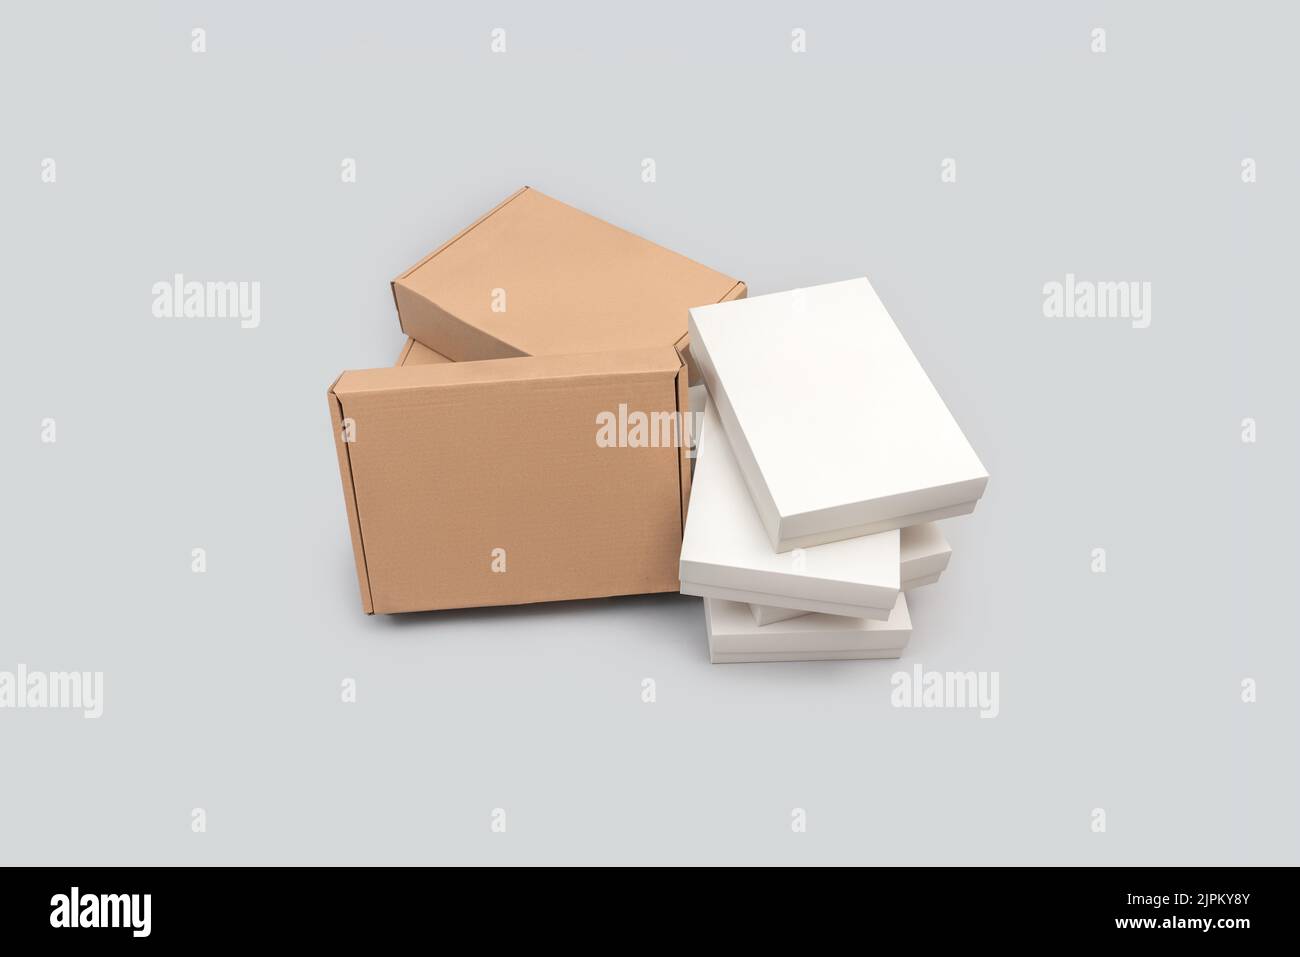 Groupe de boîtes en carton blanc et marron isolées sur fond blanc. E-commerce et concept d'emballage Banque D'Images